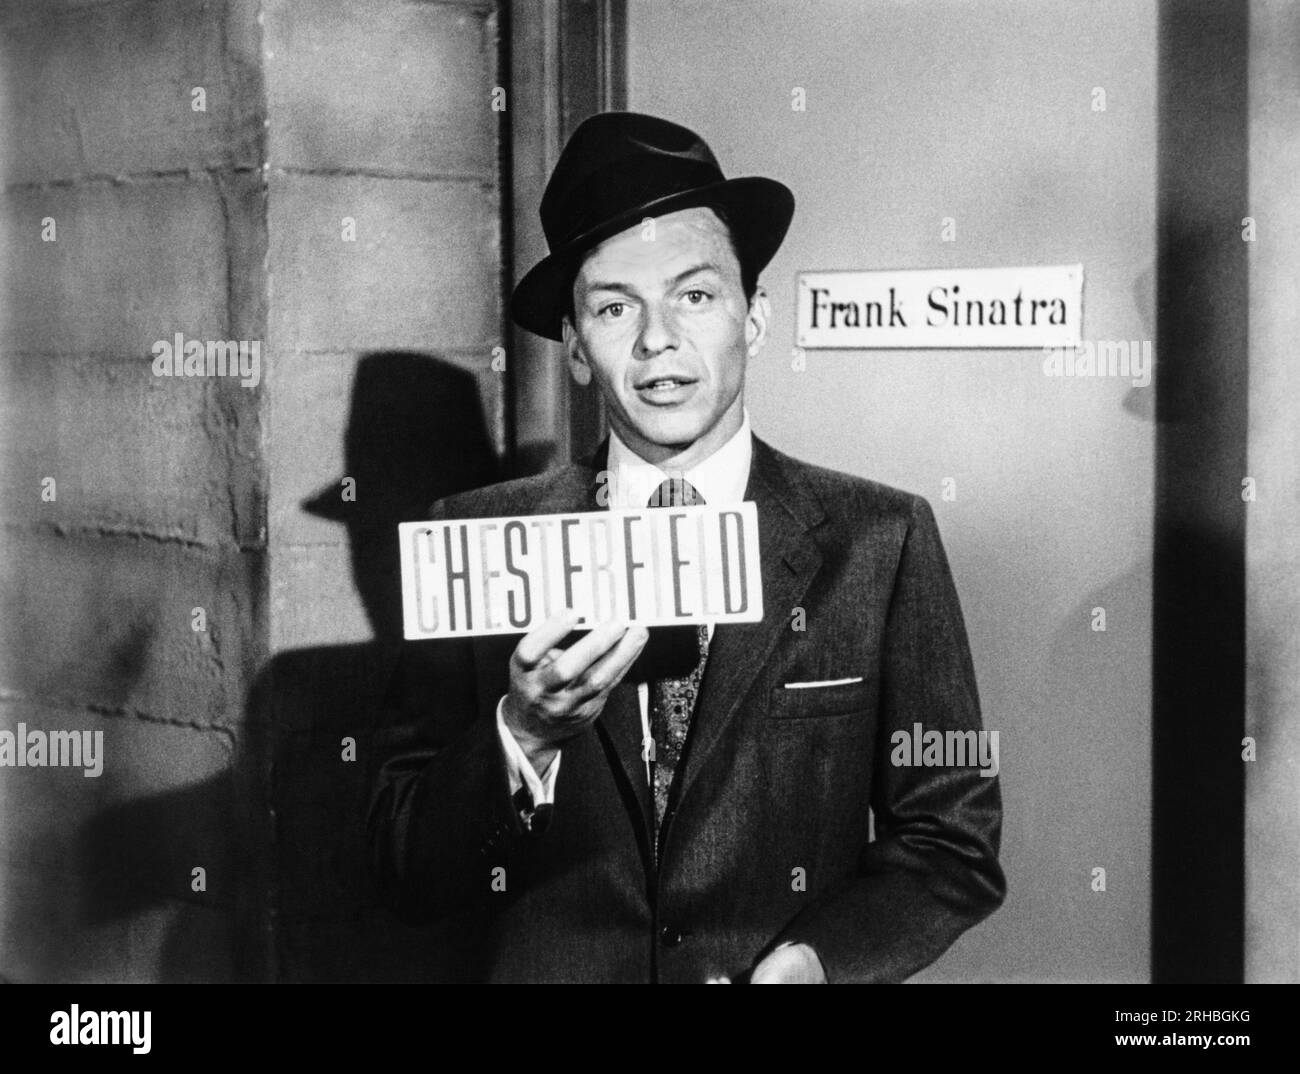 États-Unis : c. 1957 Frank Sinatra tenant un panneau pour les cigarettes Chesterfield. Le Frank Sinatra Show a été sponsorisé par eux. Banque D'Images